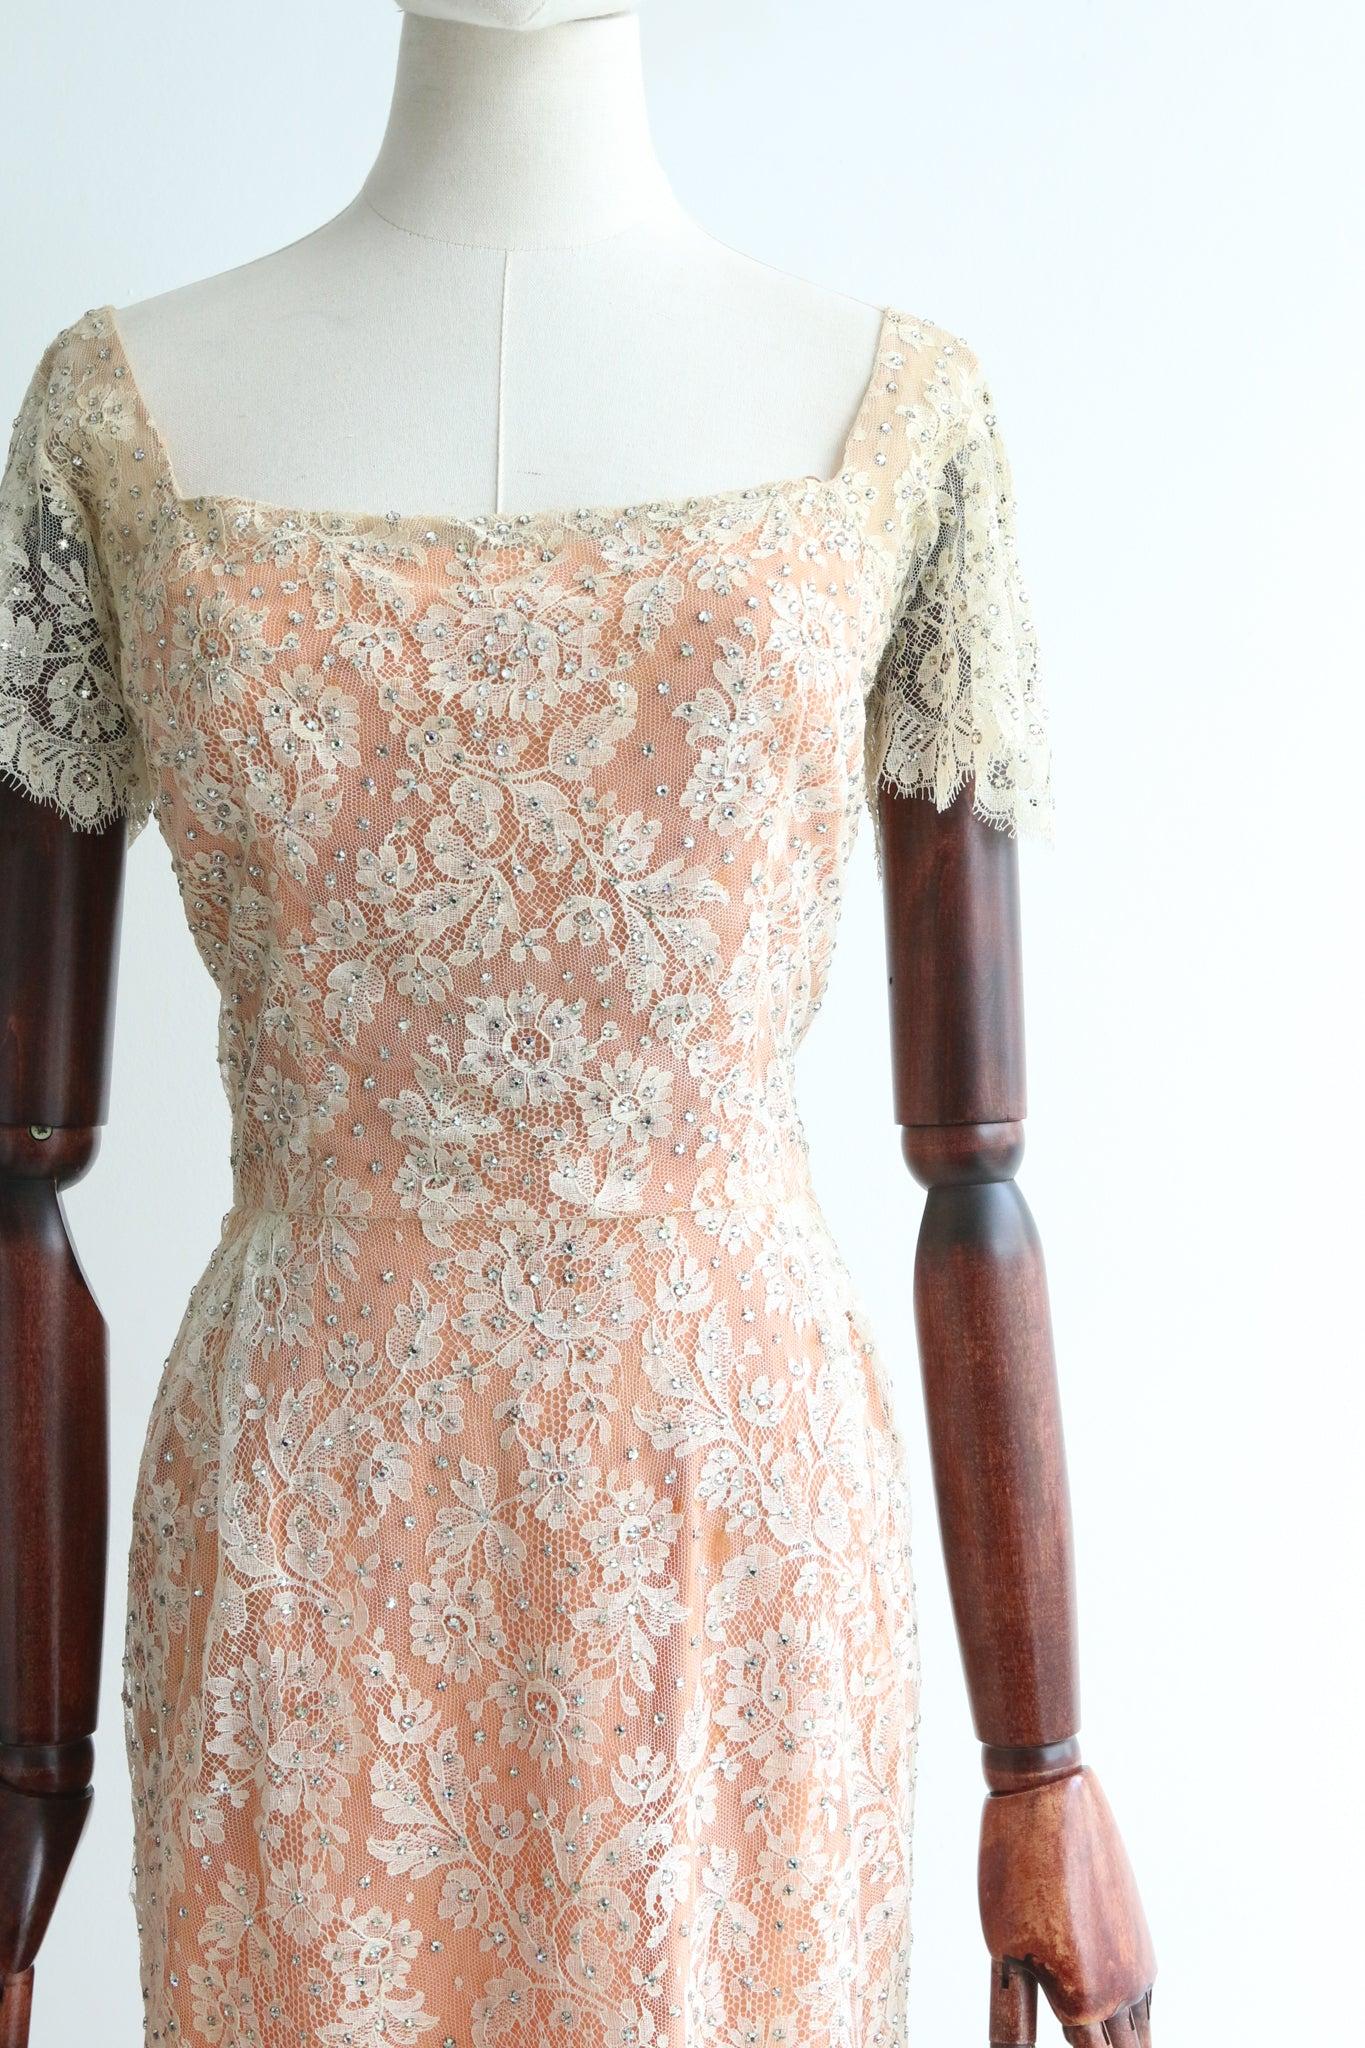 Dieses prächtige Kleid aus Chantilly-Spitze und Seide aus den 1950er Jahren mit cremefarbenem Spitzen- und apricotfarbenem Seidenfutter, akzentuiert durch silberne Strasssteine, ist ein seltenes Stück, das man sehen kann, und ein Statement für Ihre